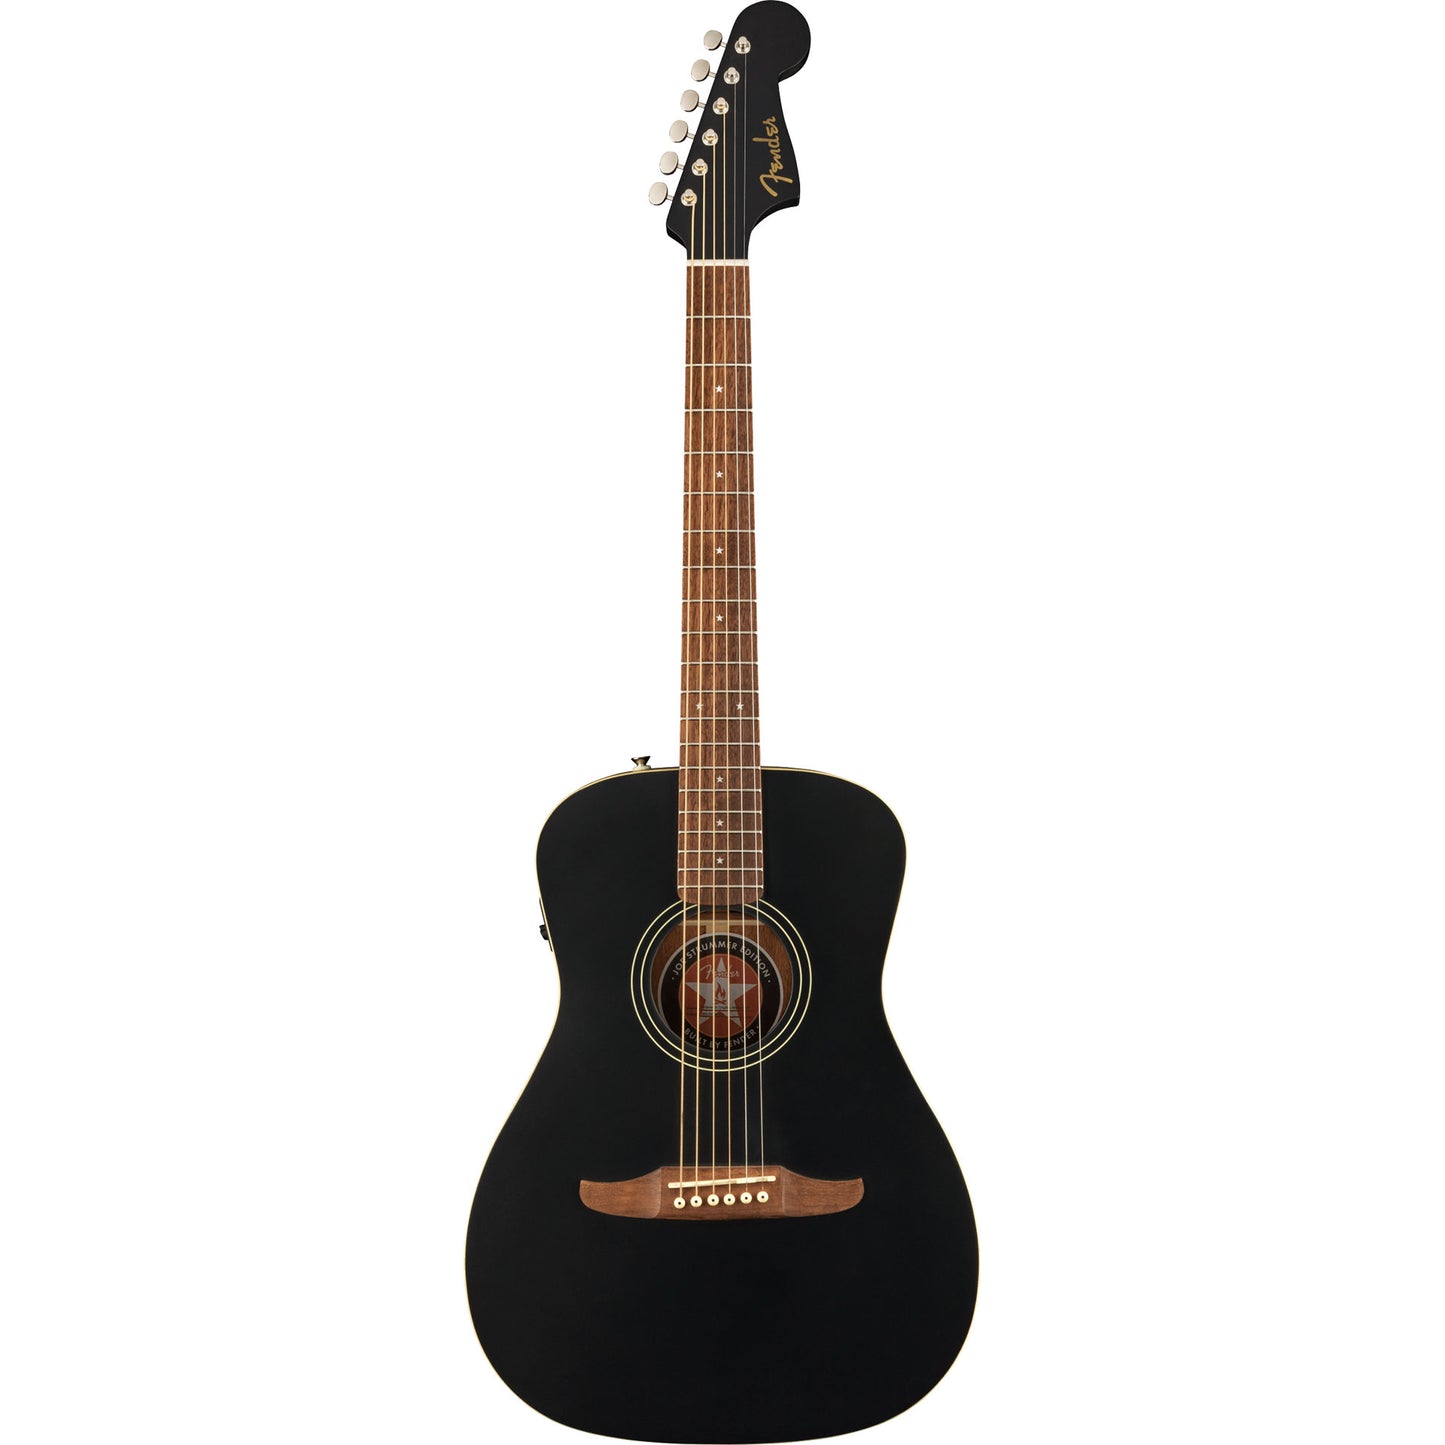 Fender Joe Strummer Campfire Acoustic Electric Guitar in Matte Black